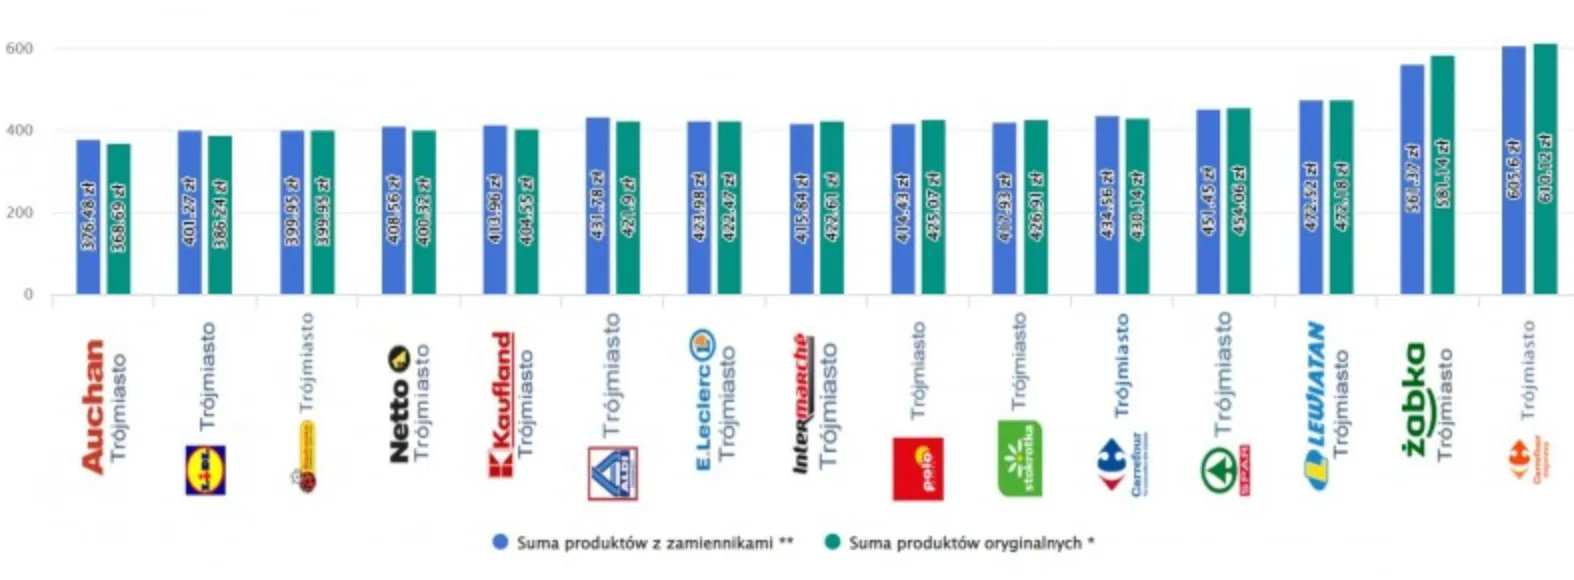 Суммы продуктов в разных супермаркетах Польши